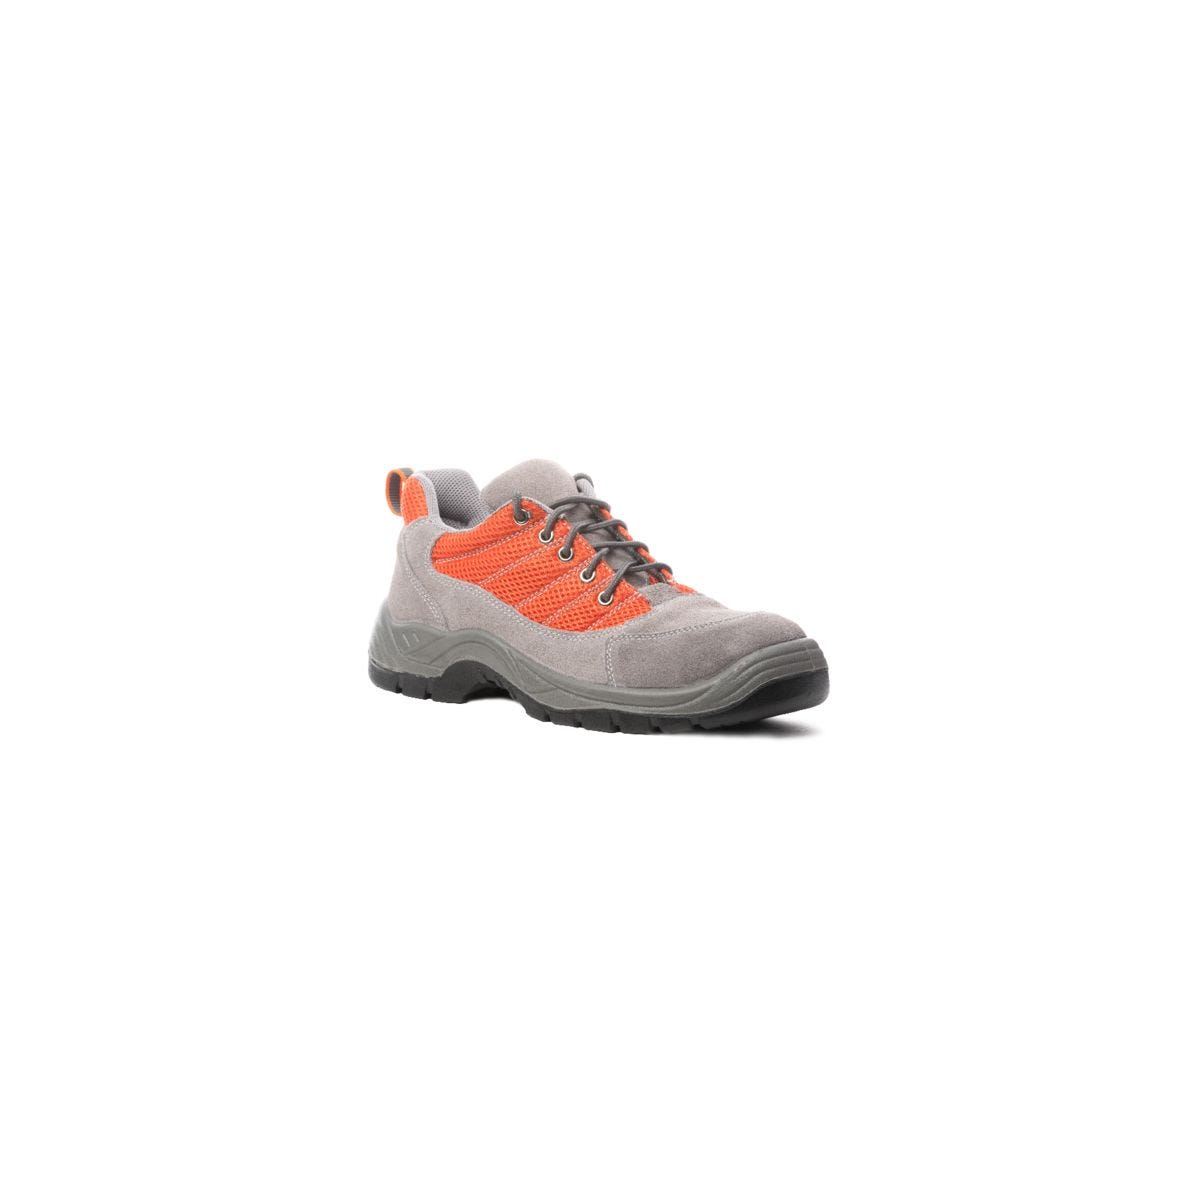 Chaussures de sécurité SPINELLE S1P basse orange - COVERGUARD - Taille 38 0